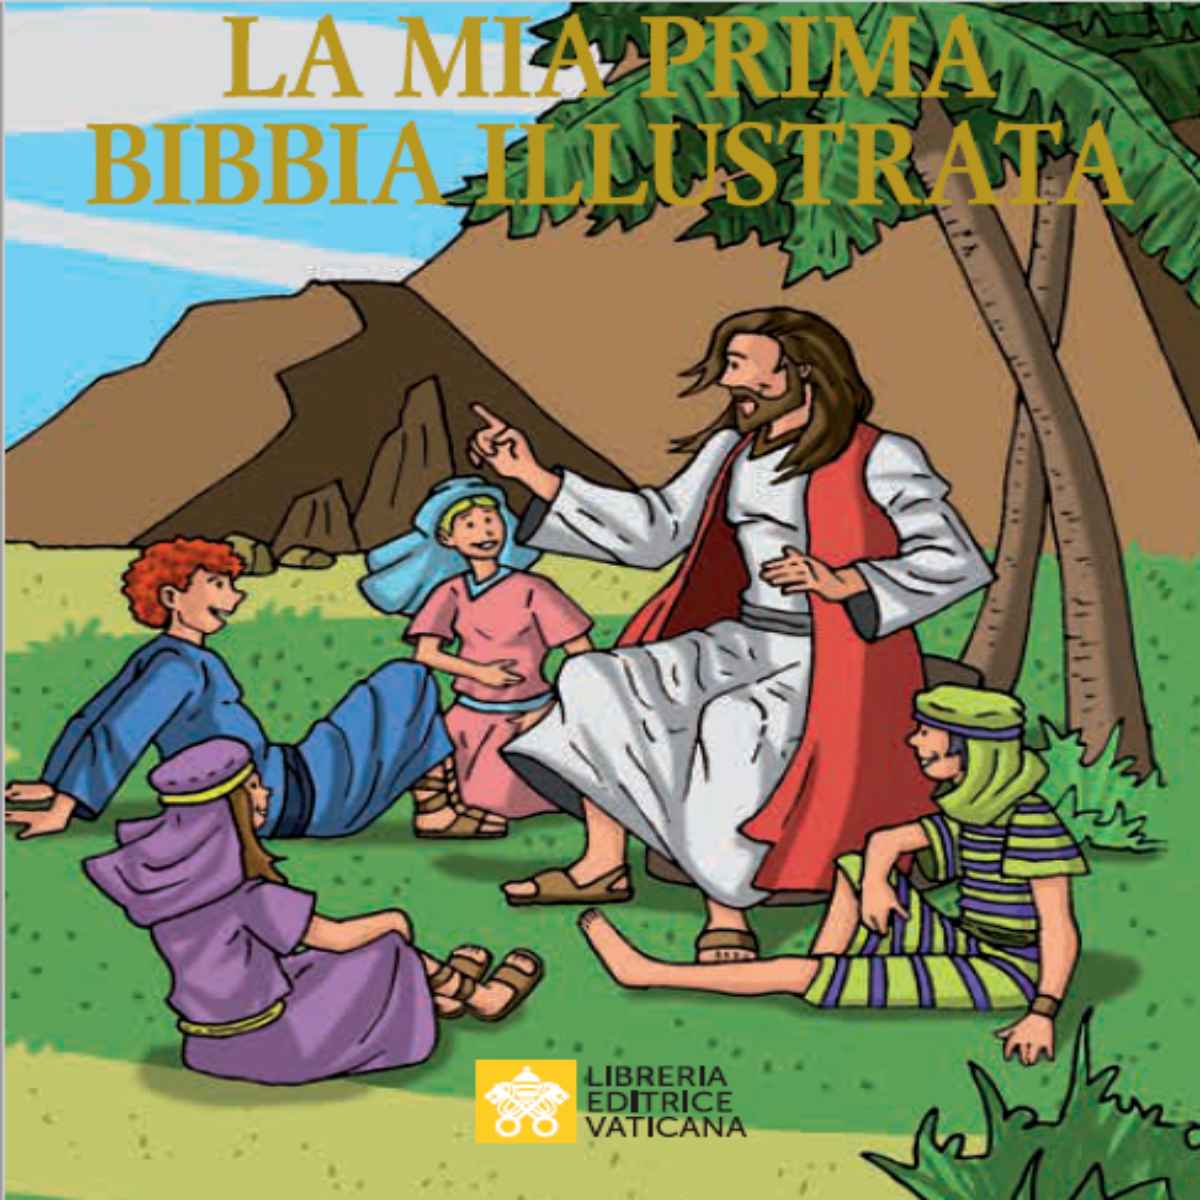 La mia prima Bibbia illustrata” per bambini, scaricabile dal web